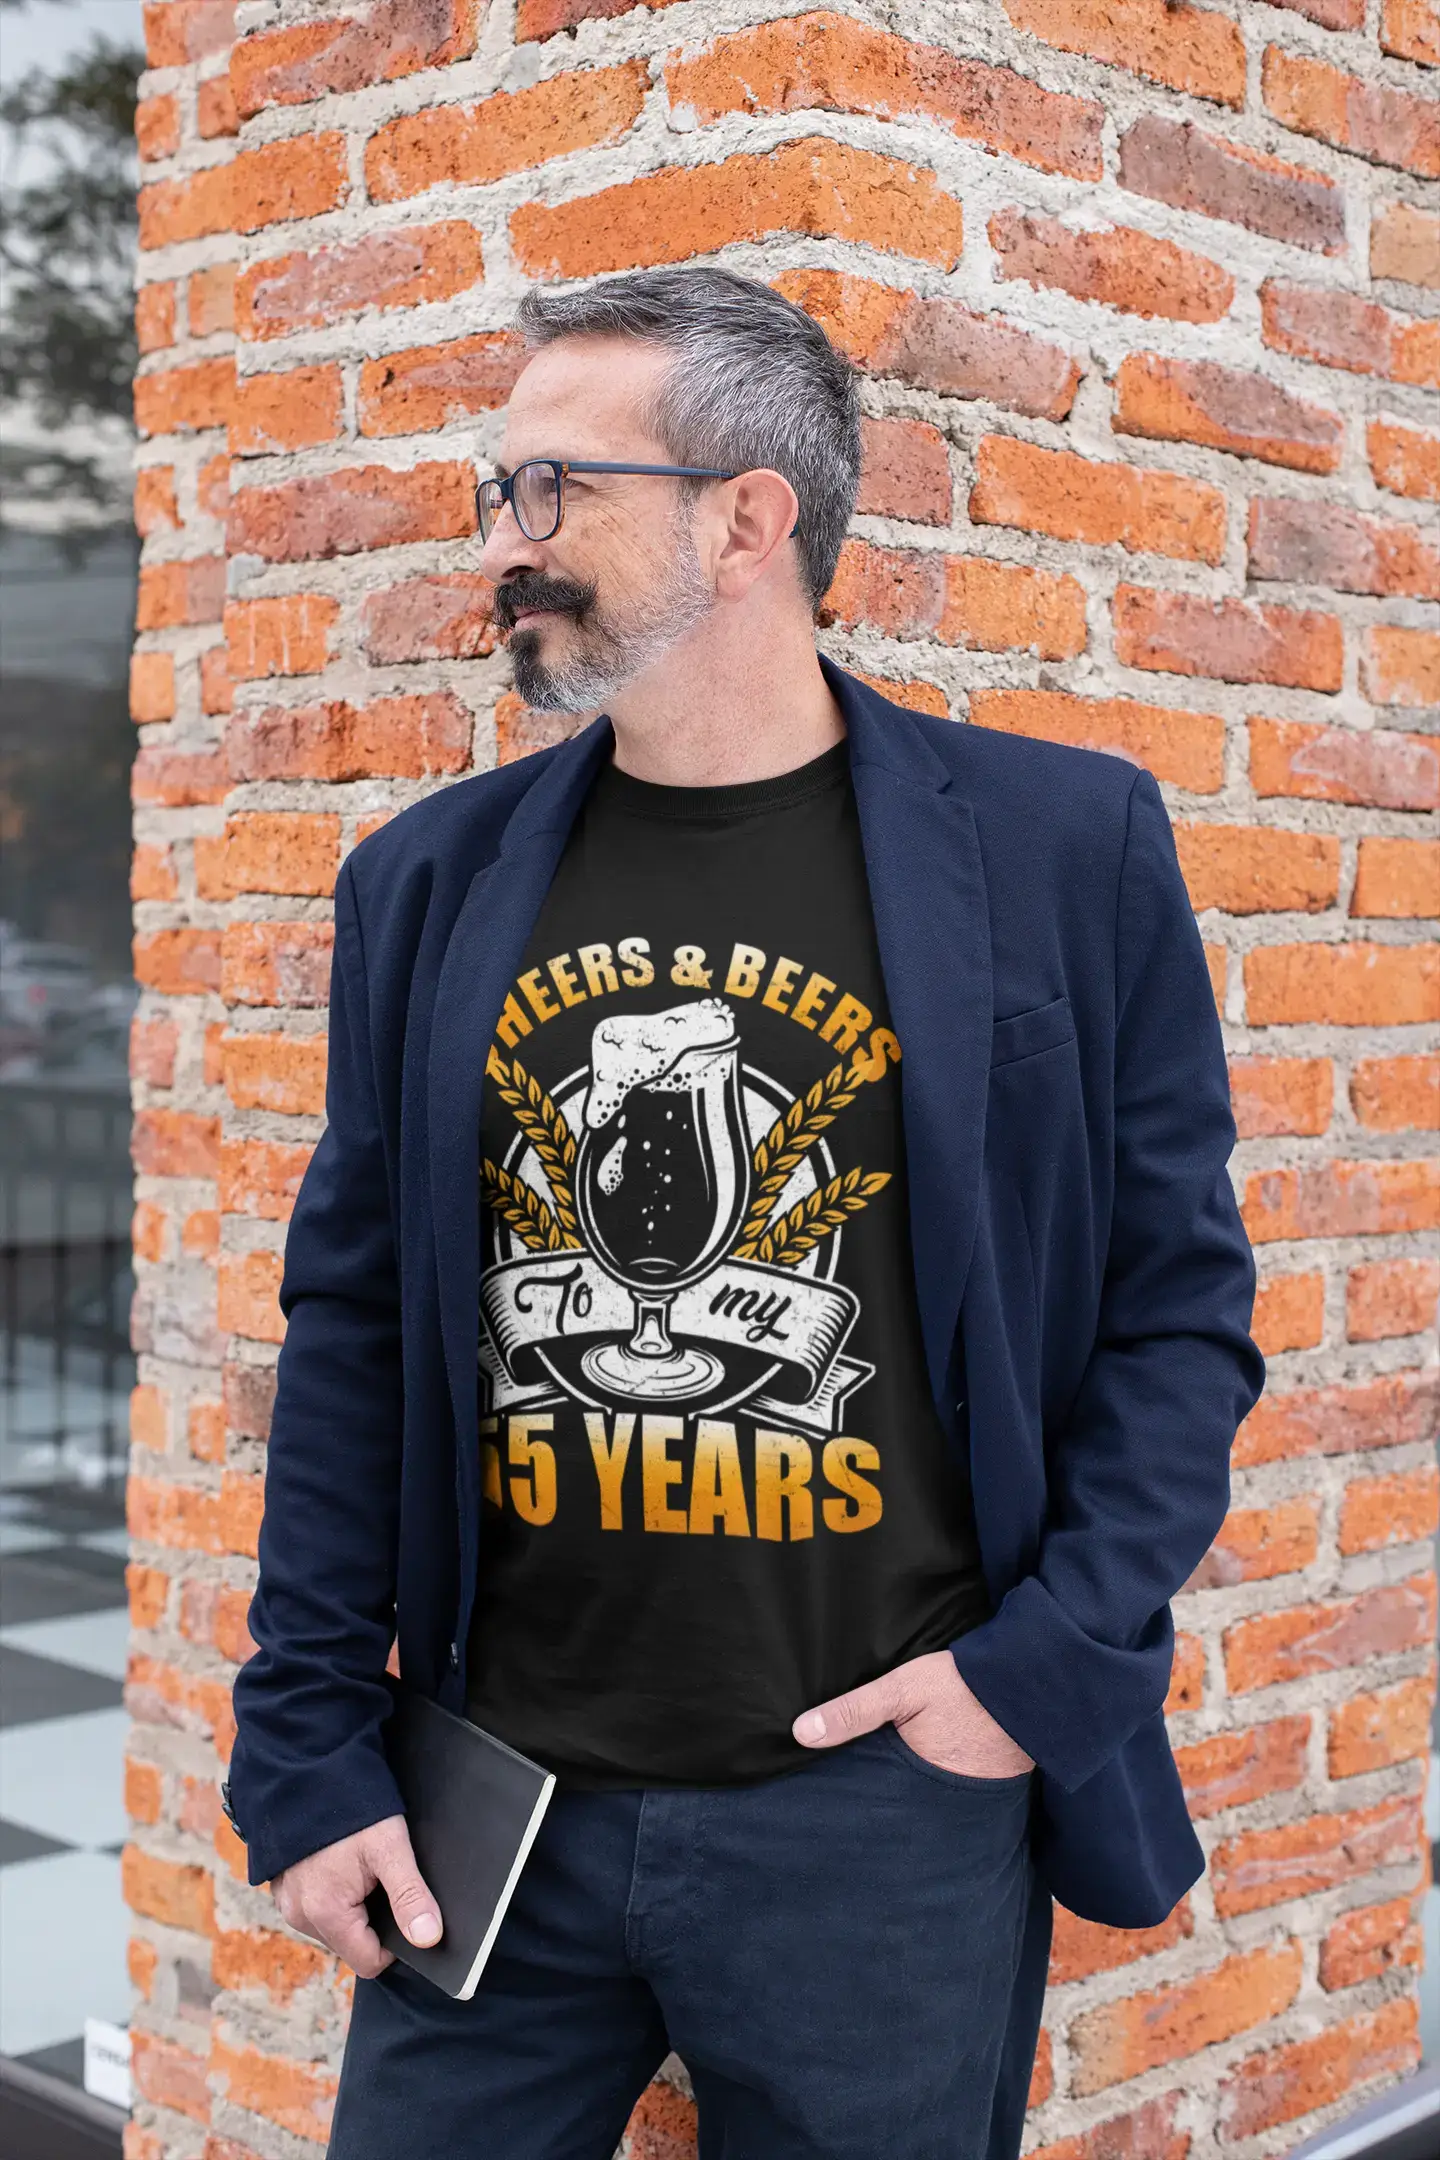 ULTRABASIC Herren-T-Shirt „Cheers and Beers To My 55 Years – Bierliebhaber-Geburtstags-T-Shirt“.